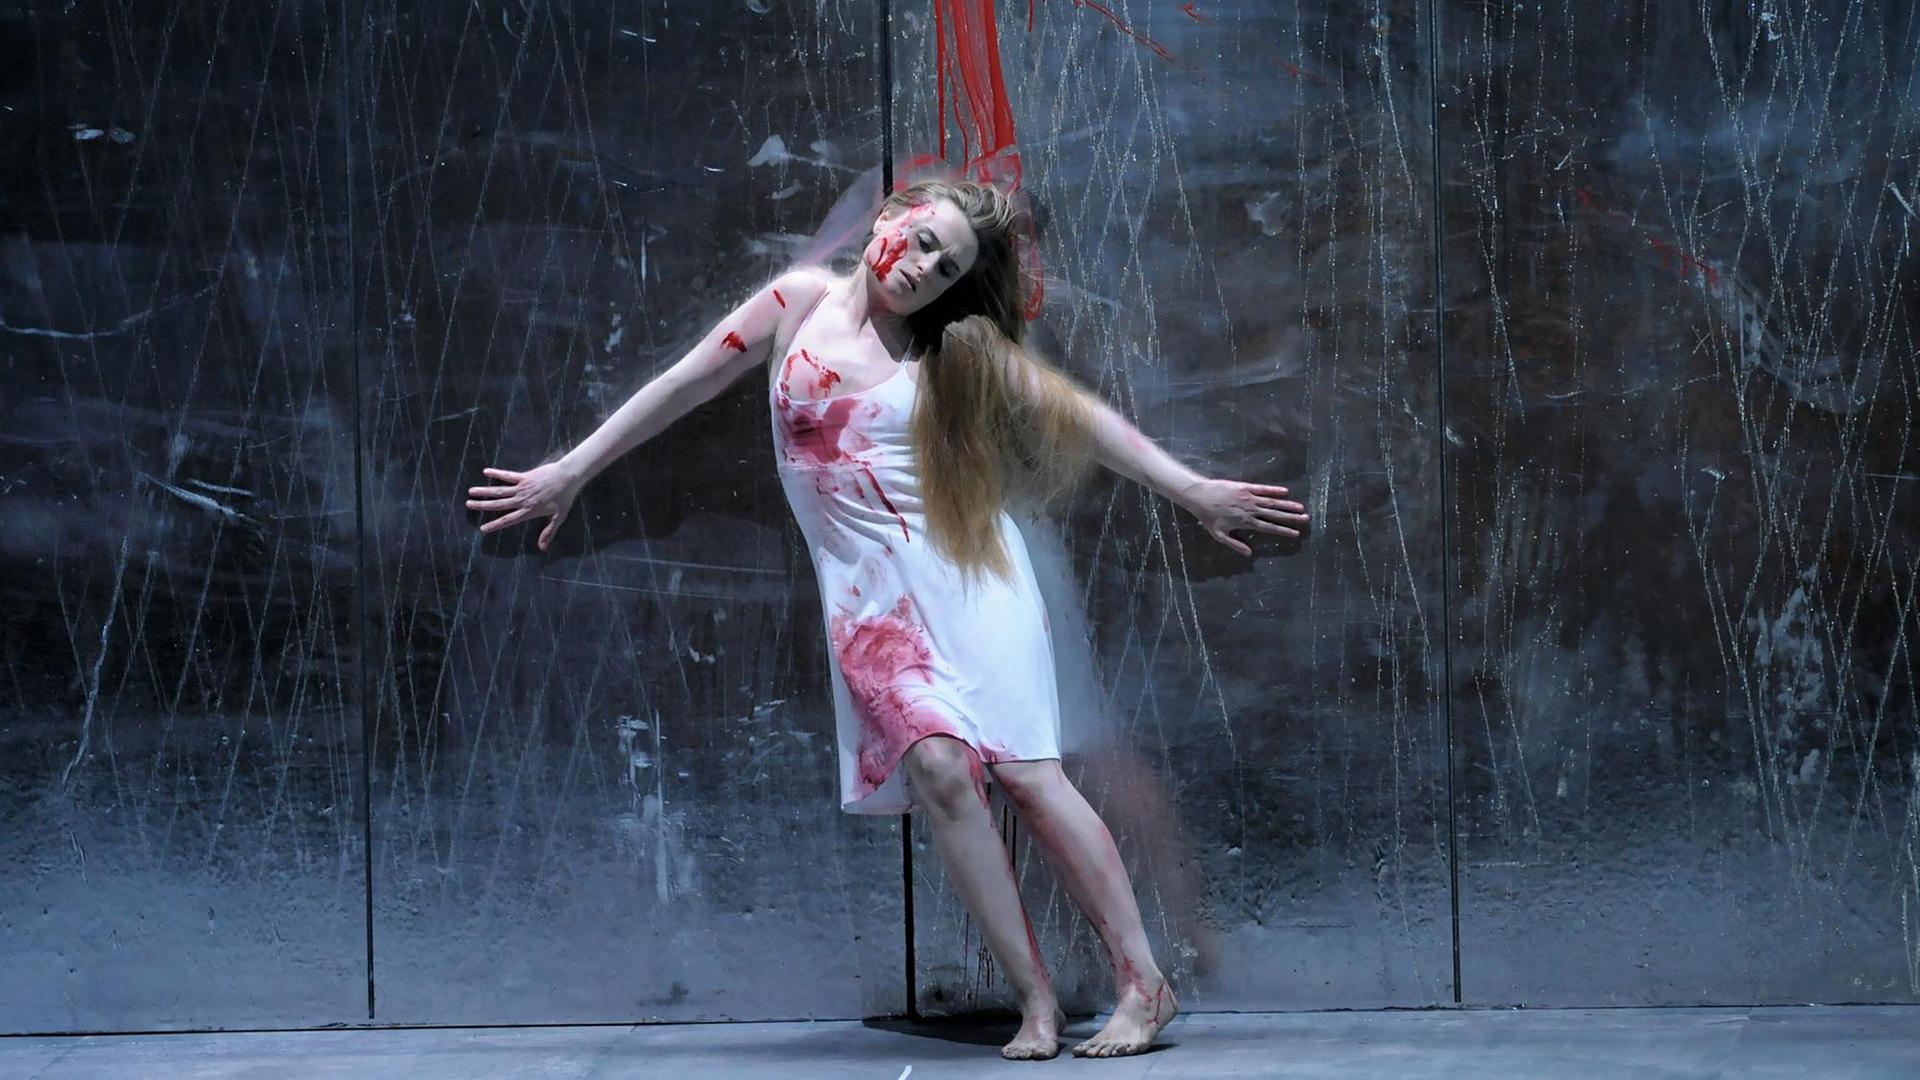 Sterbeszene aus der Oper "Faust" von Charles Gounod. Szenenfoto aus der Inszenierung der Staatsoper Unter den Linden von Karsten Wiegand, 2009